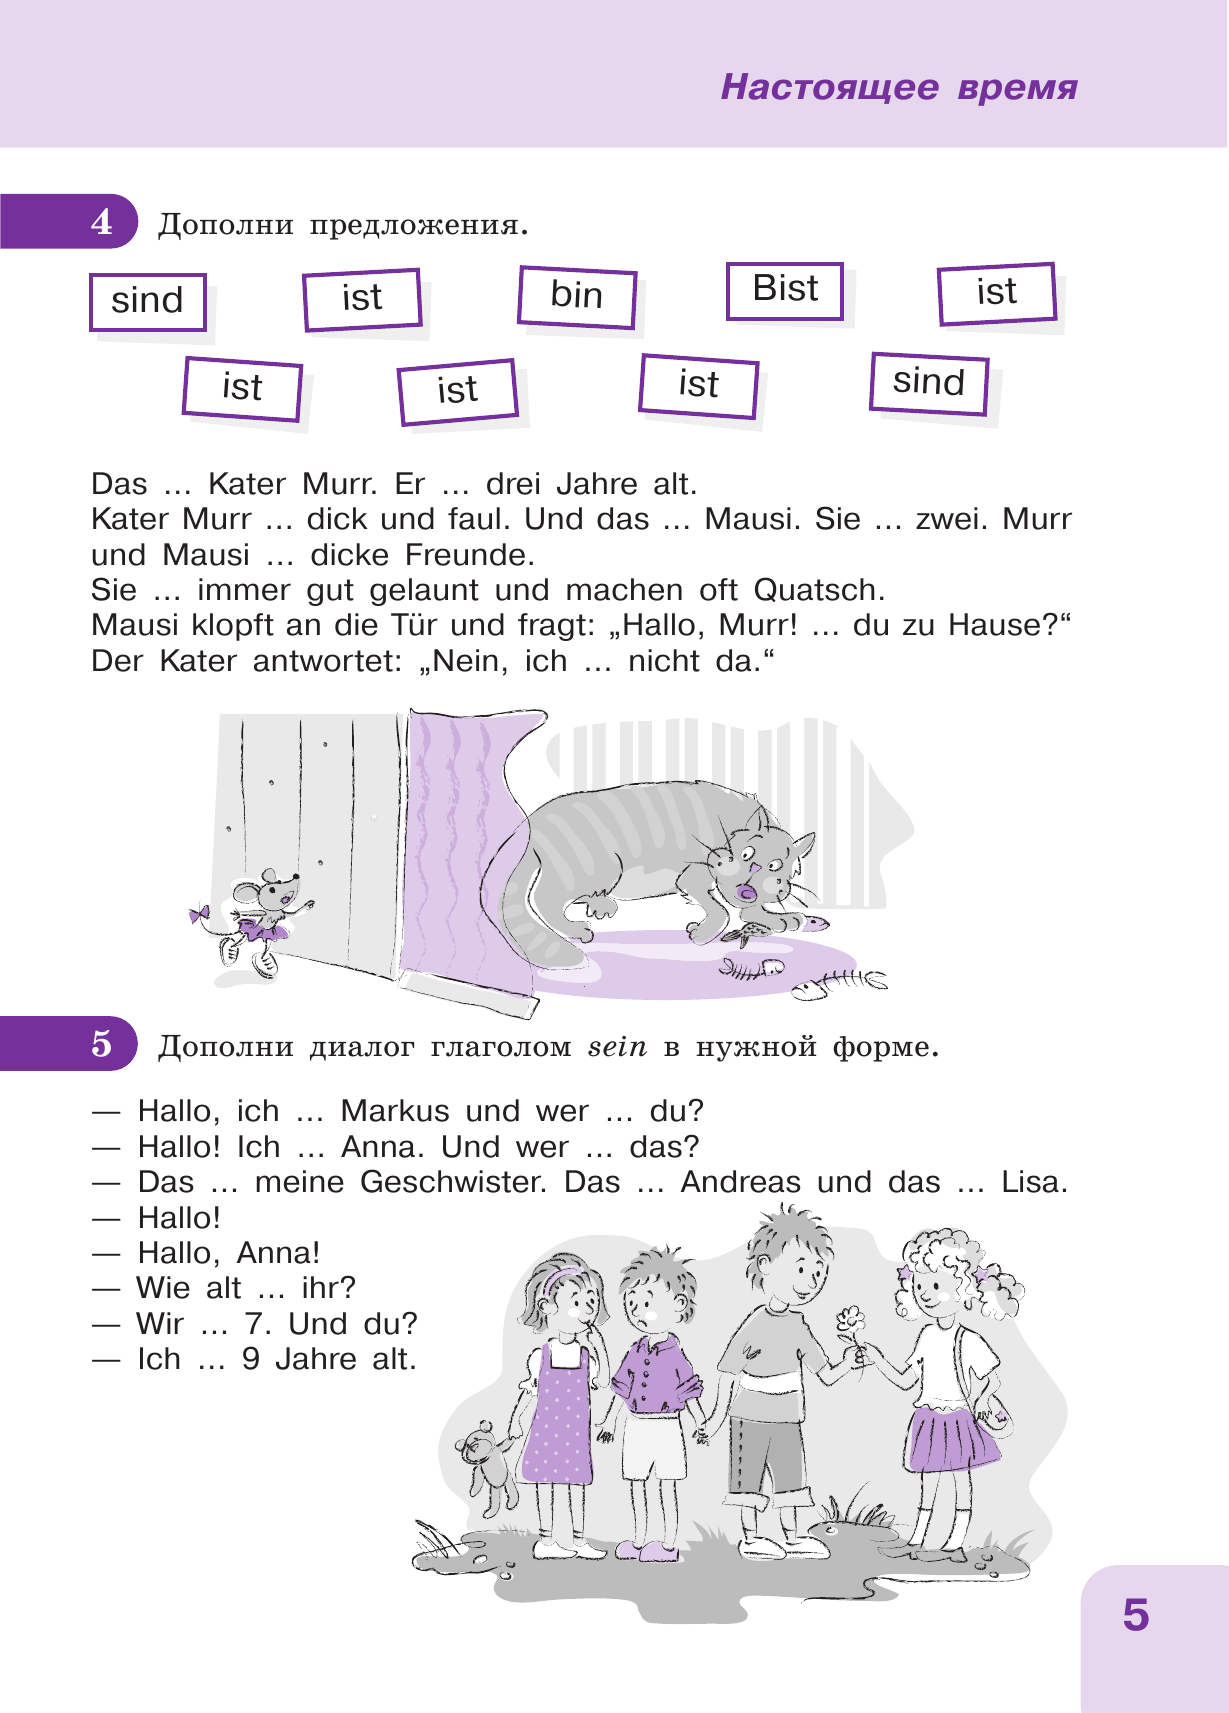 Немецкий язык: время грамматики. Пособие для эффективного изучения и тренировки грамматики - фото №13